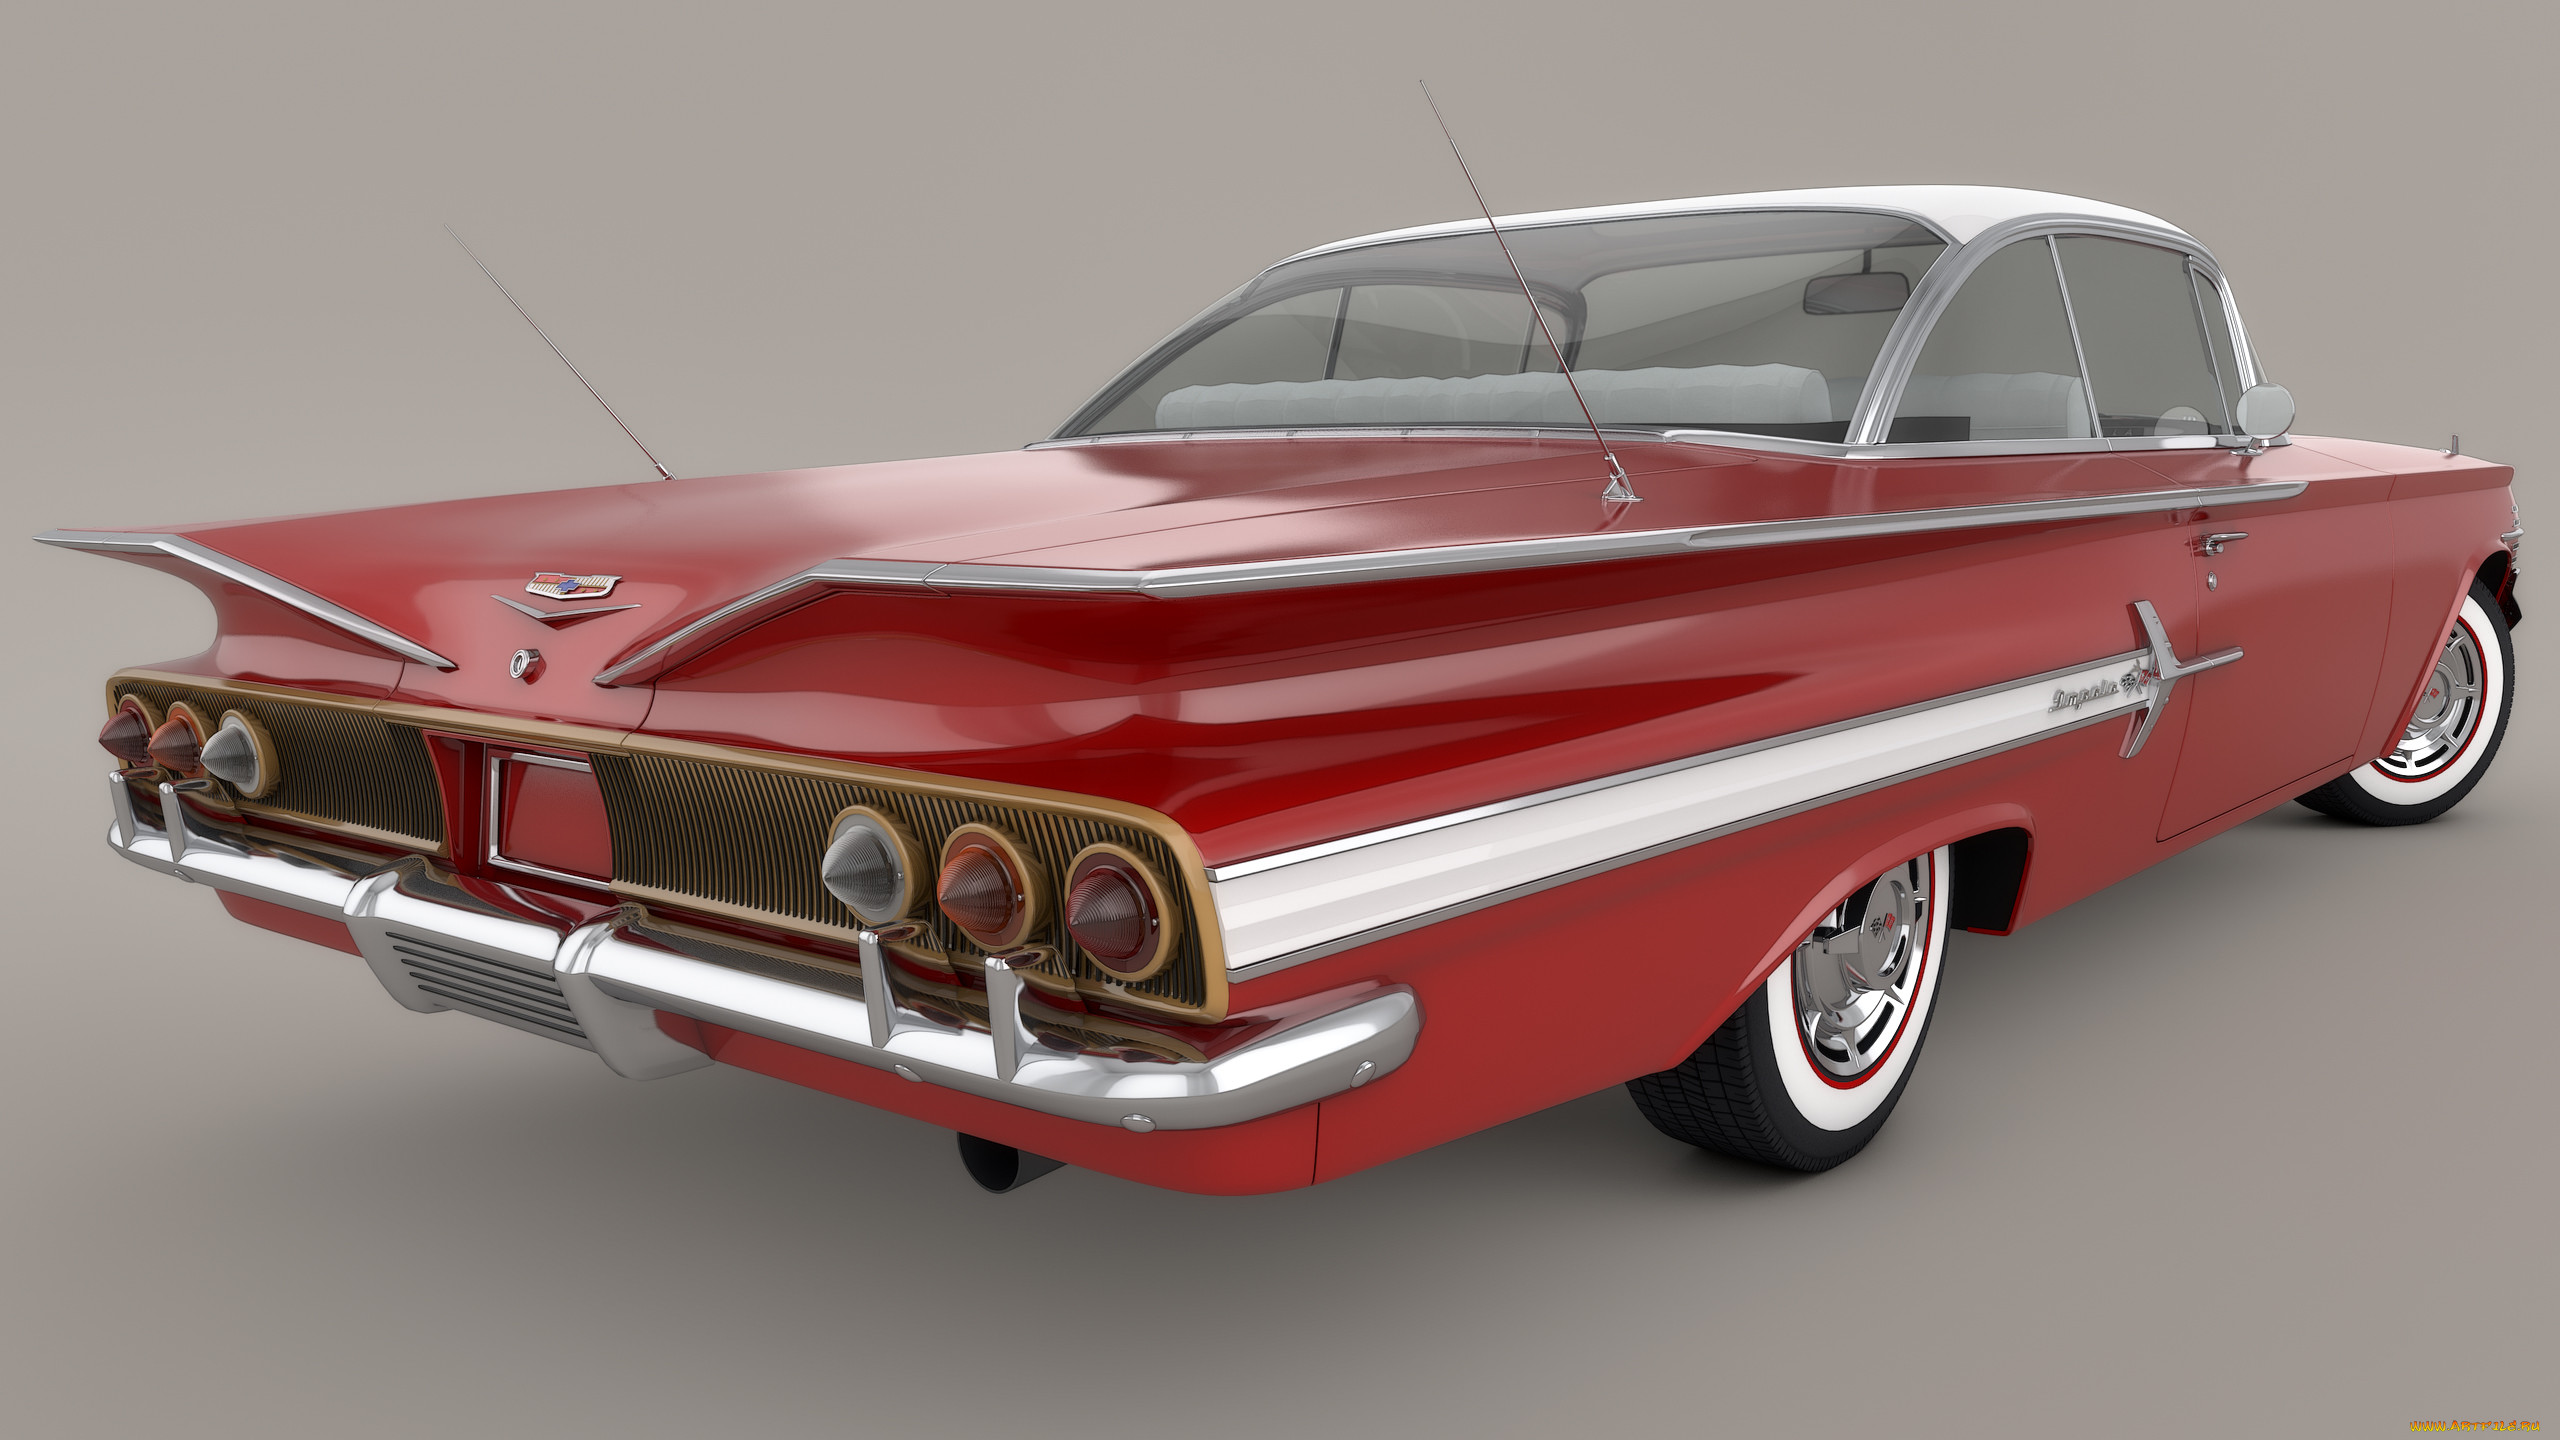 , 3, impala, chevrolet, 1960